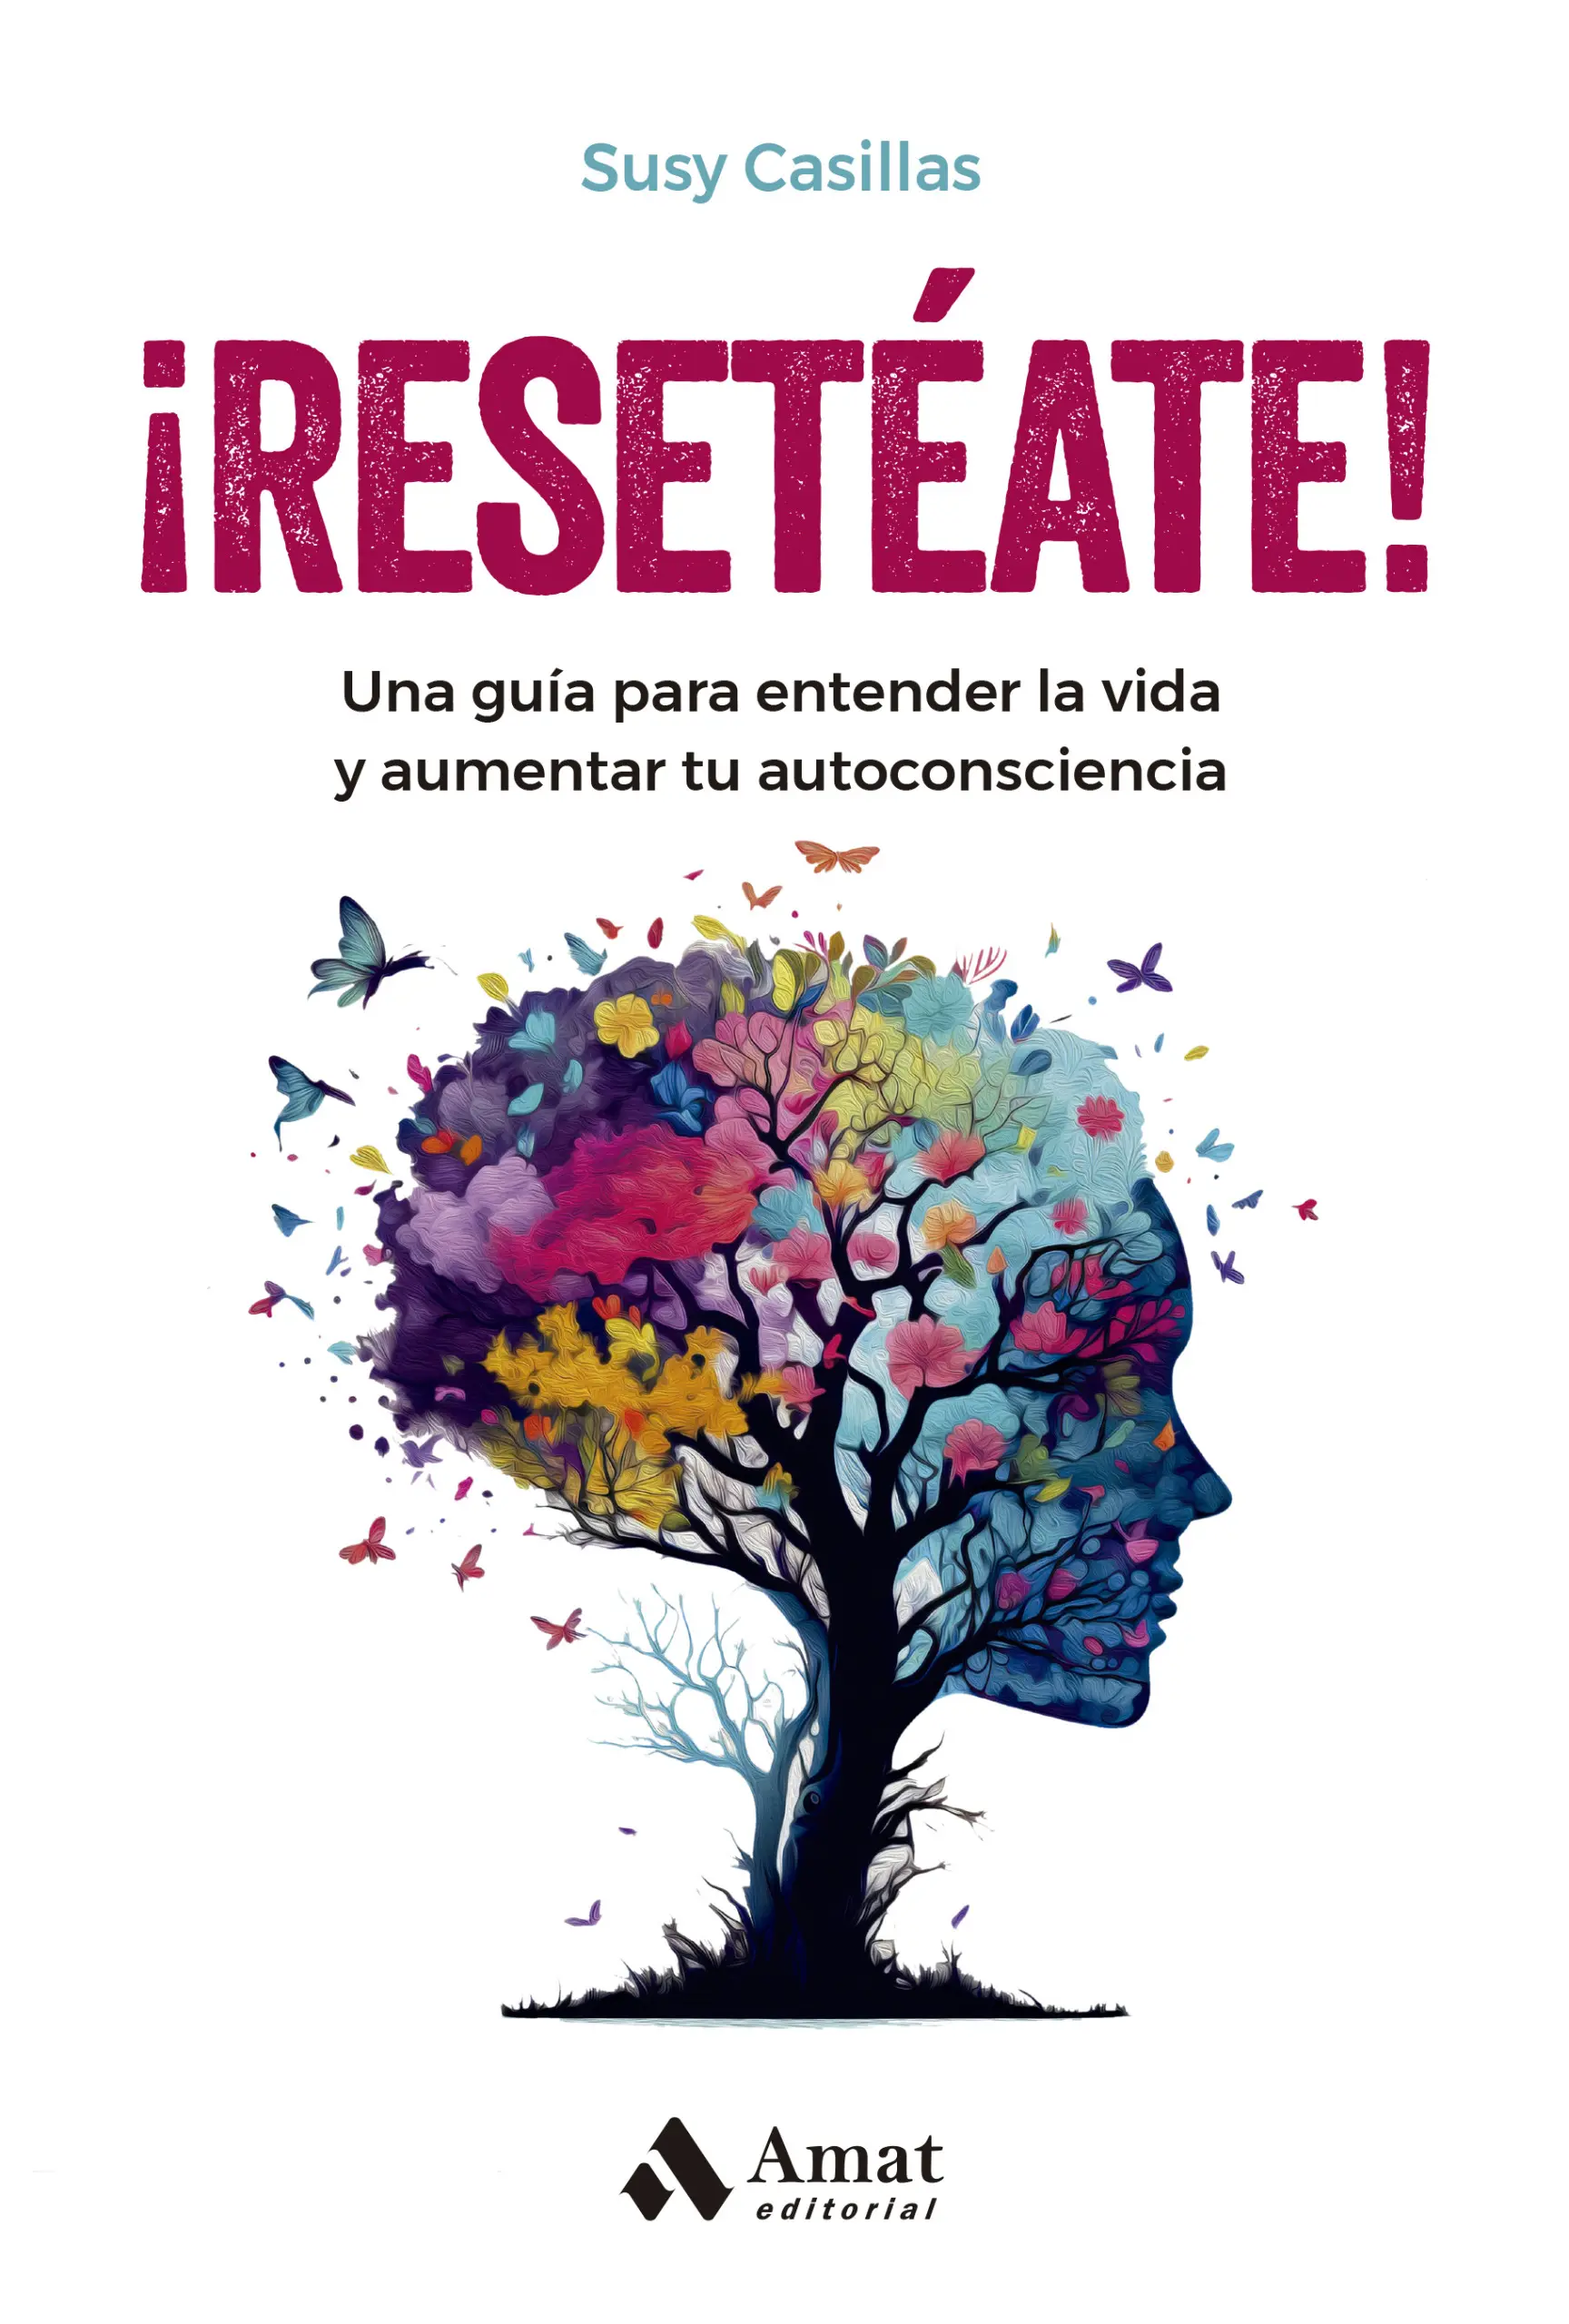 ¡Resetéate! | Susy Casillas | Libros para vivir mejor